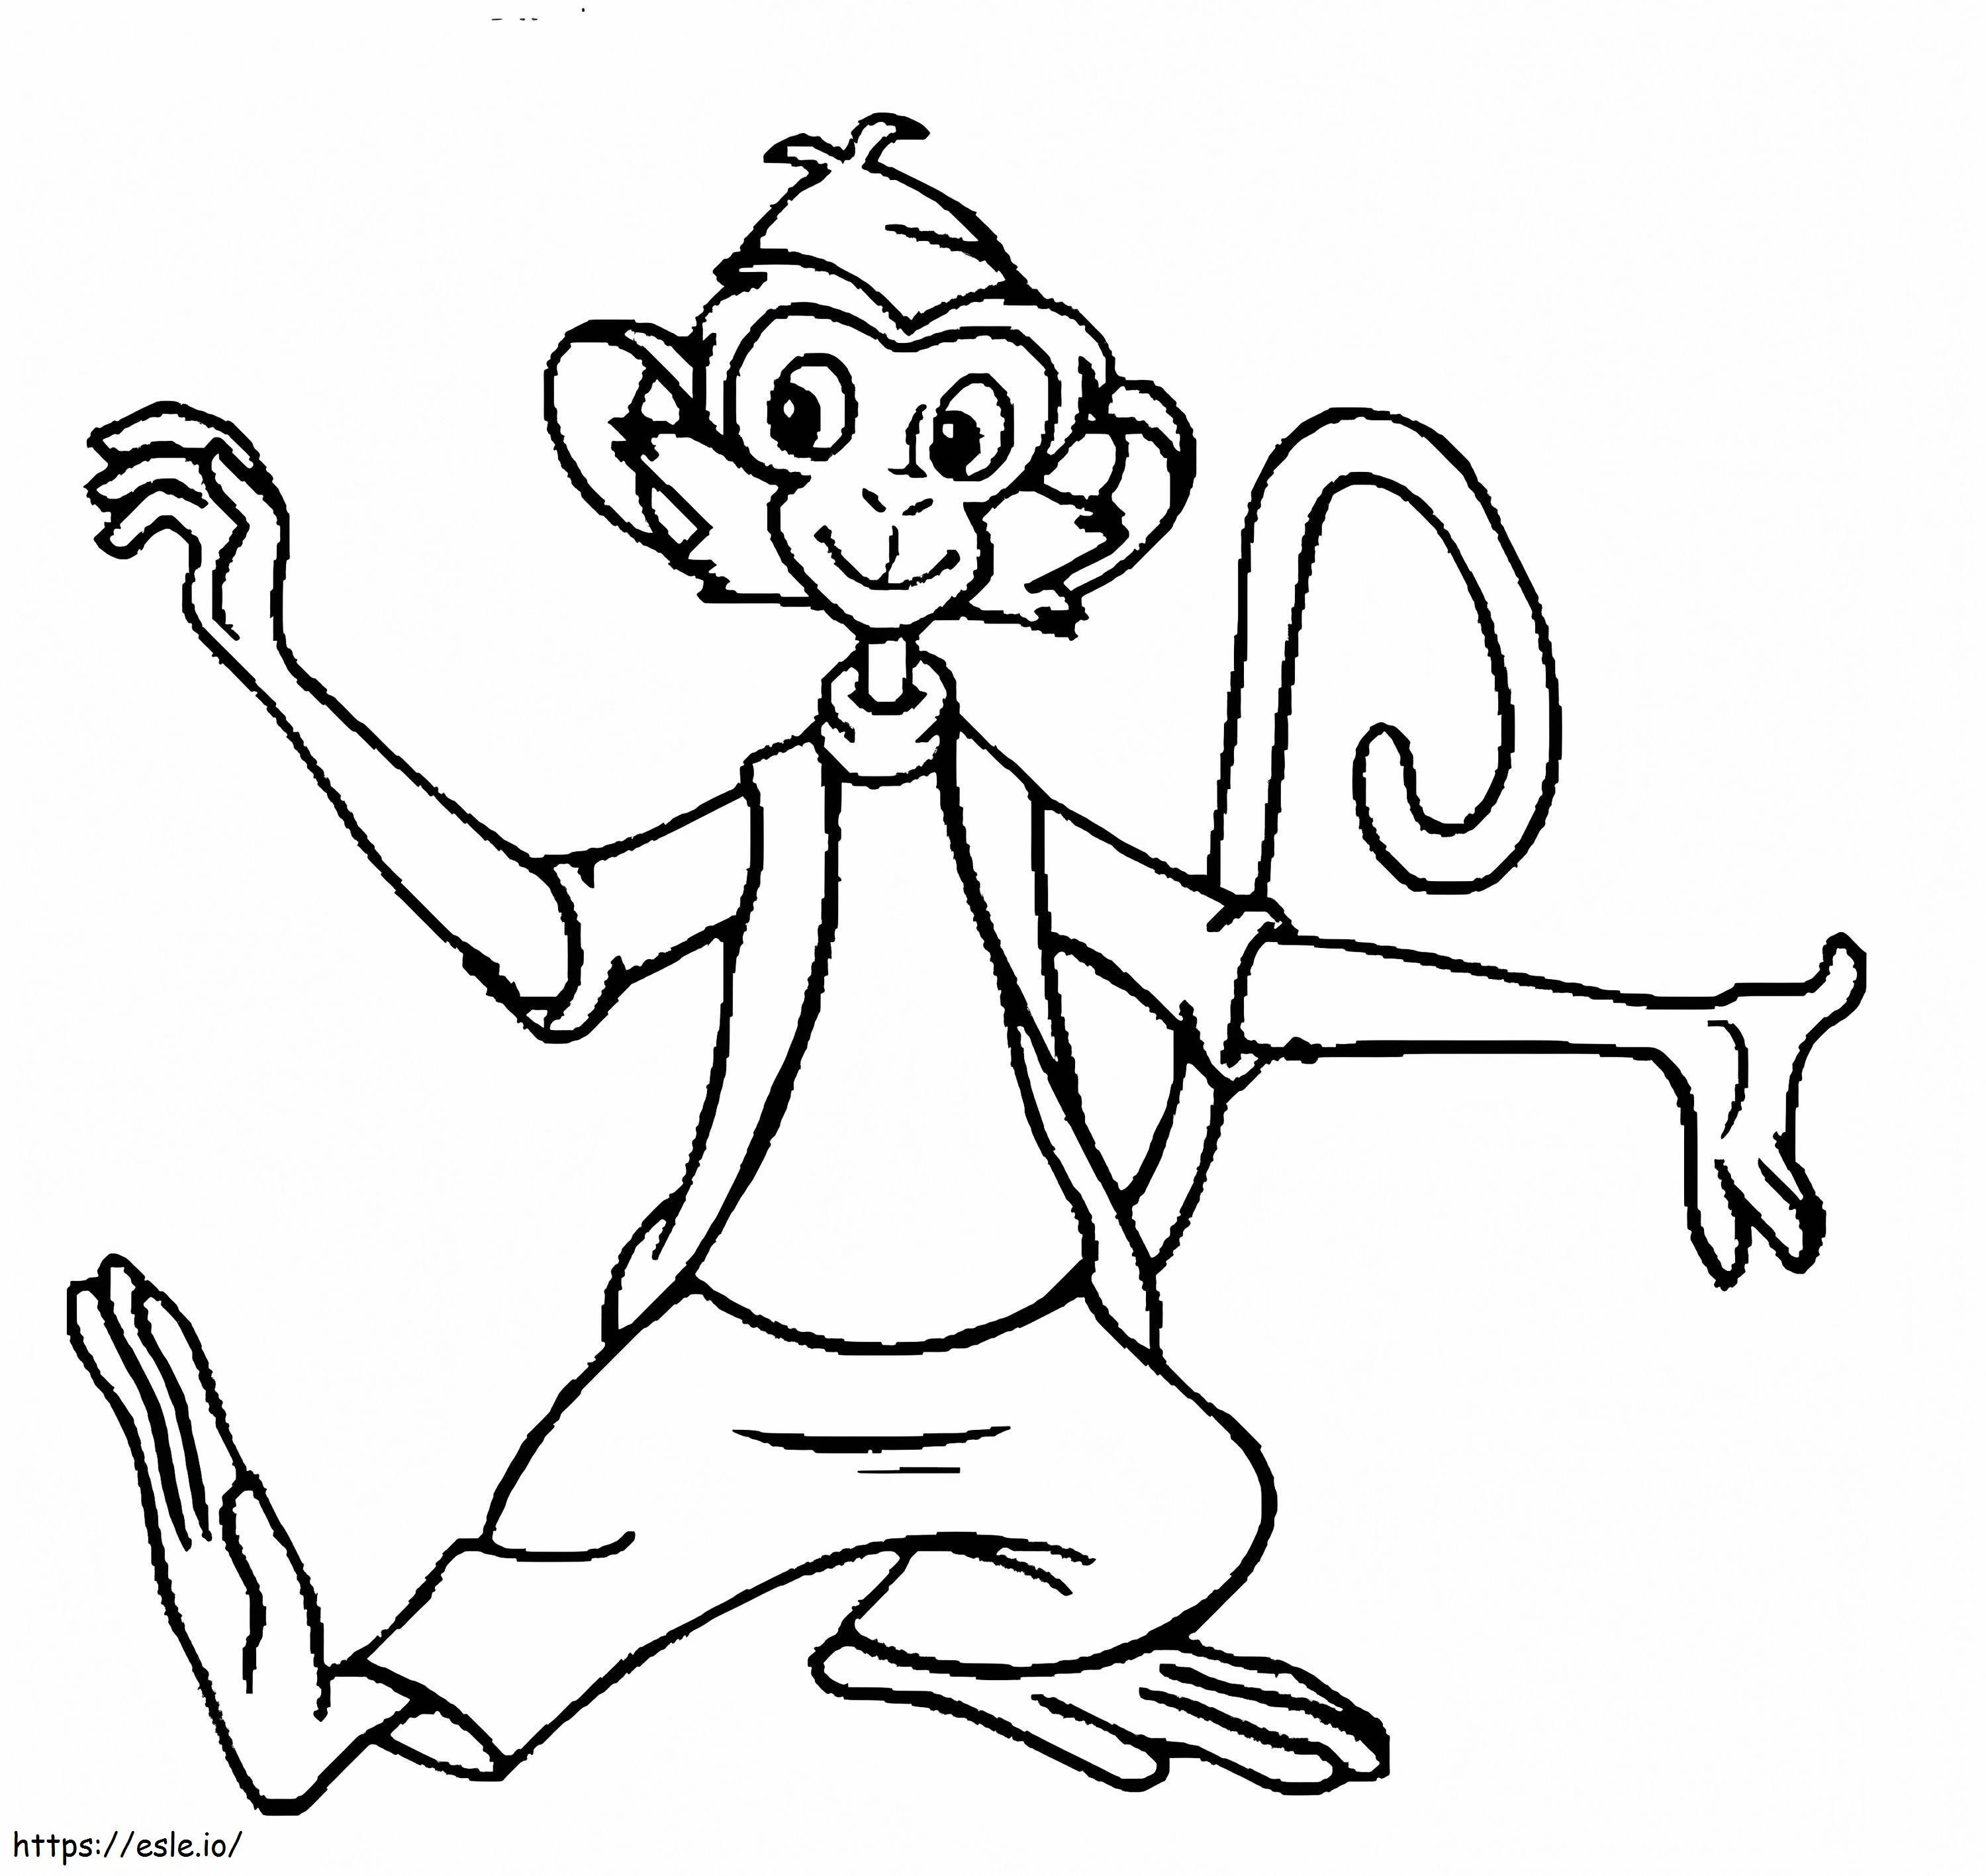 Mono de Pippi Calzaslargas para colorear